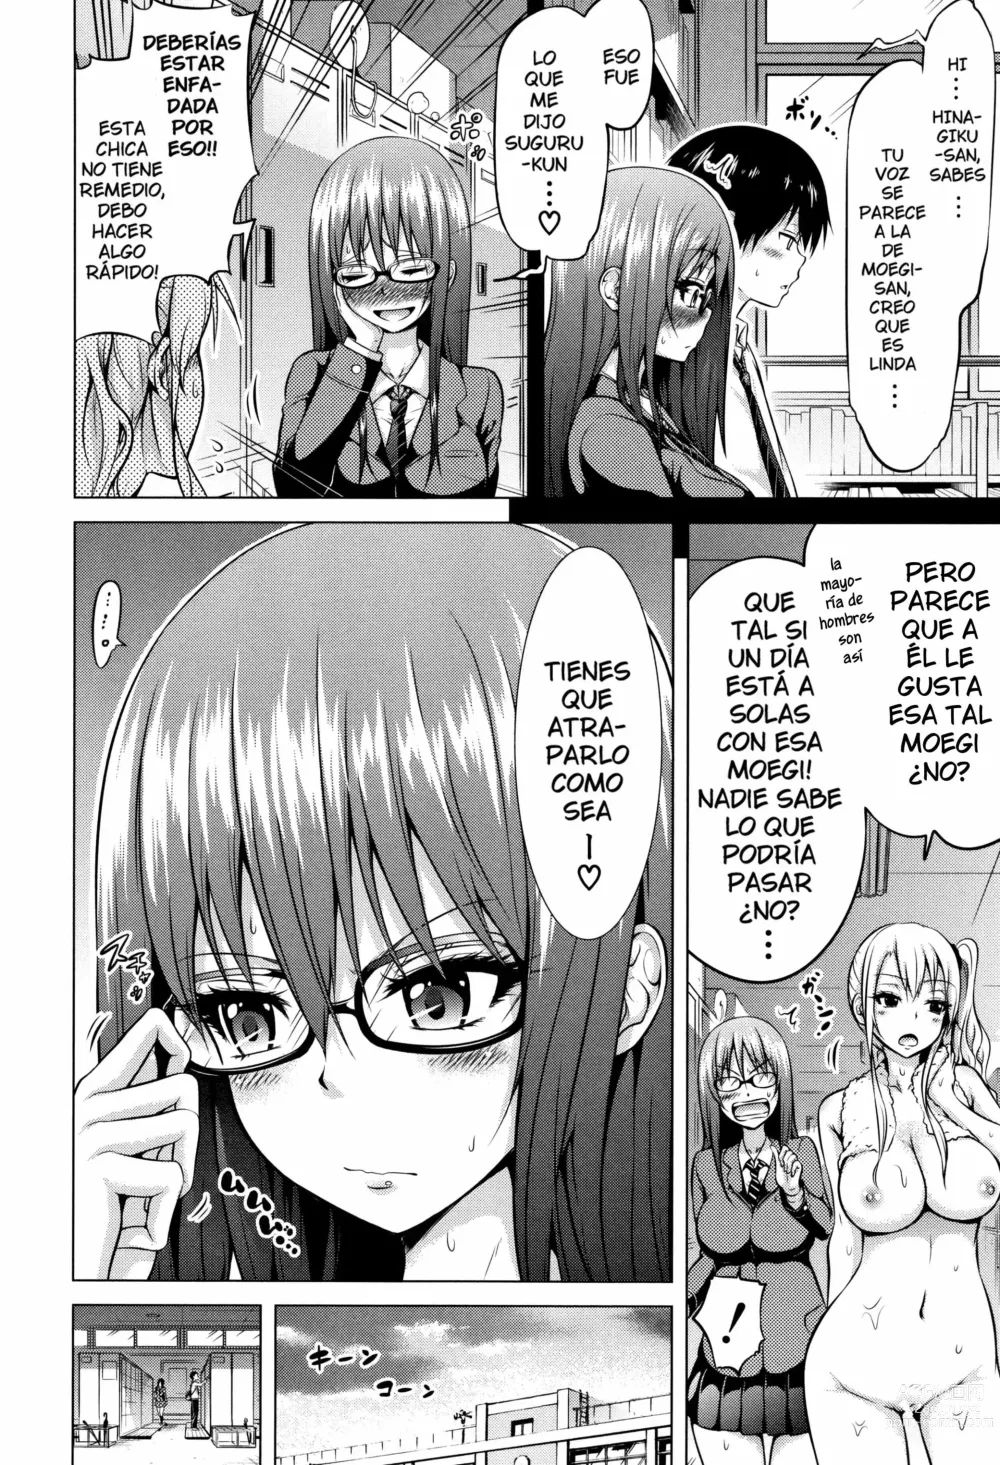 Page 4 of manga Bienvenidos al club de Hinagiku para perder la virginidad Cap.1 (decensored)